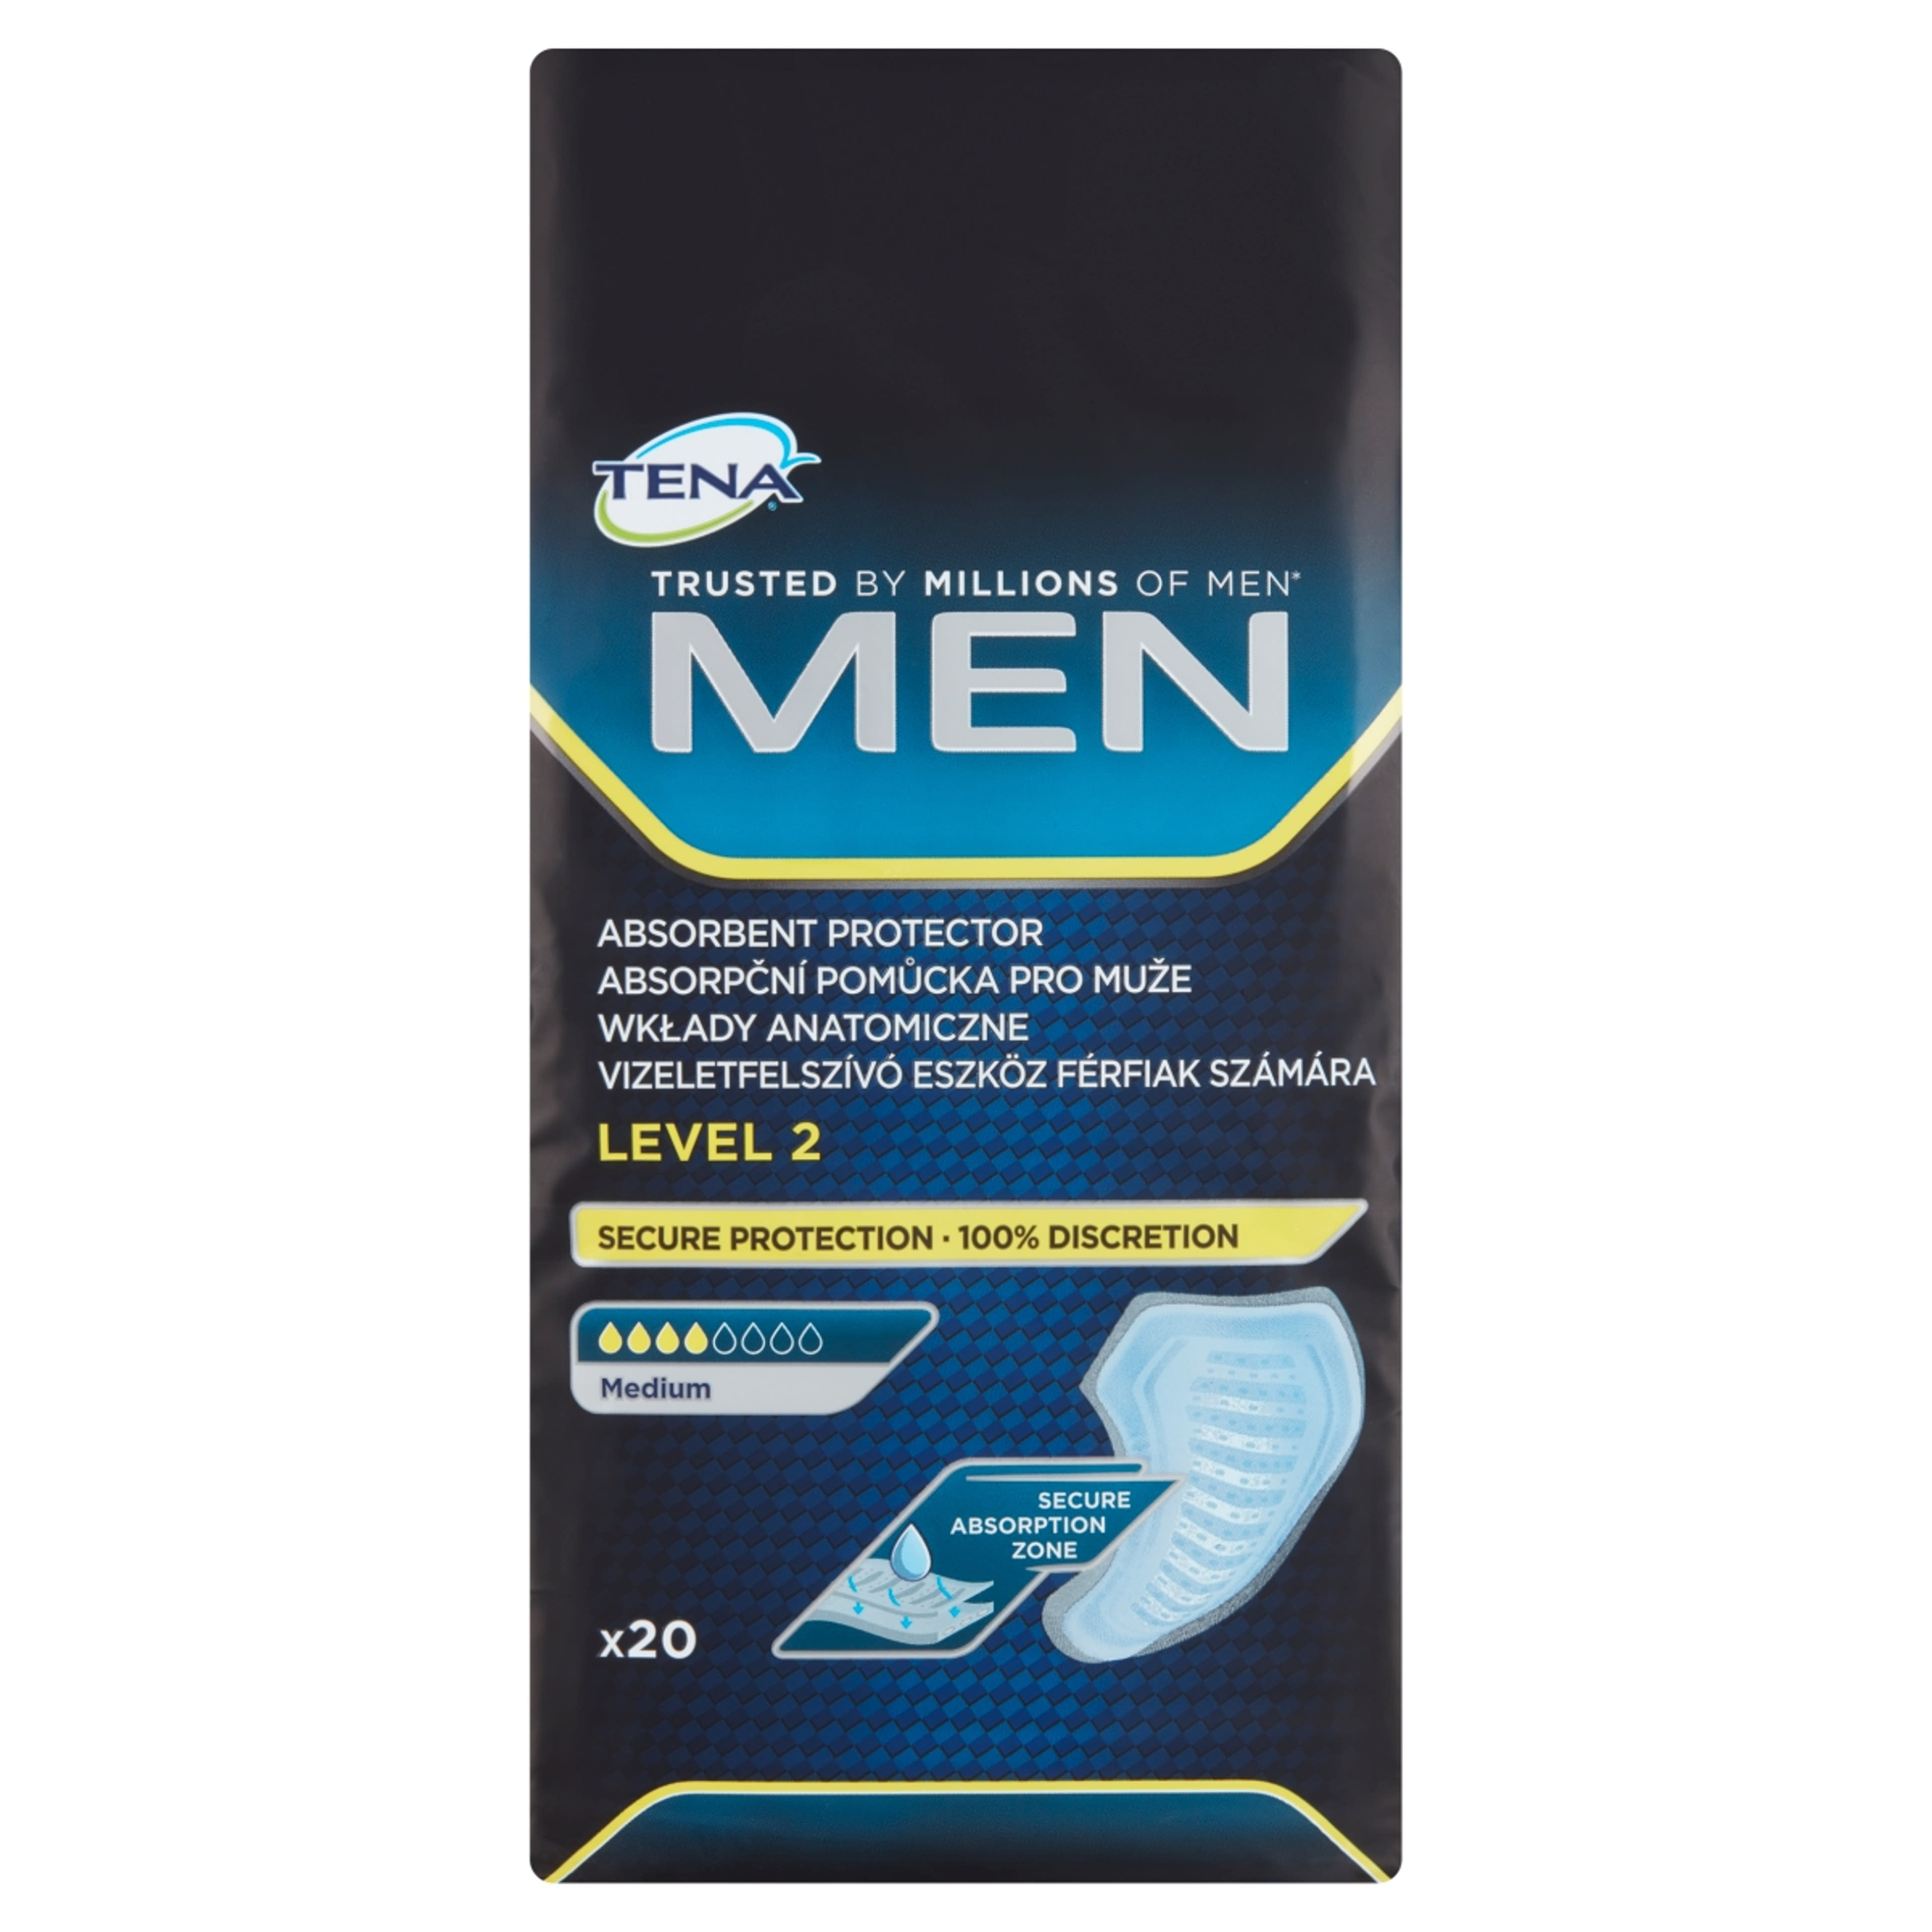 Tena Men Level 2 Medium vizeletfelszívó eszköz férfiak számára - 20 db-1